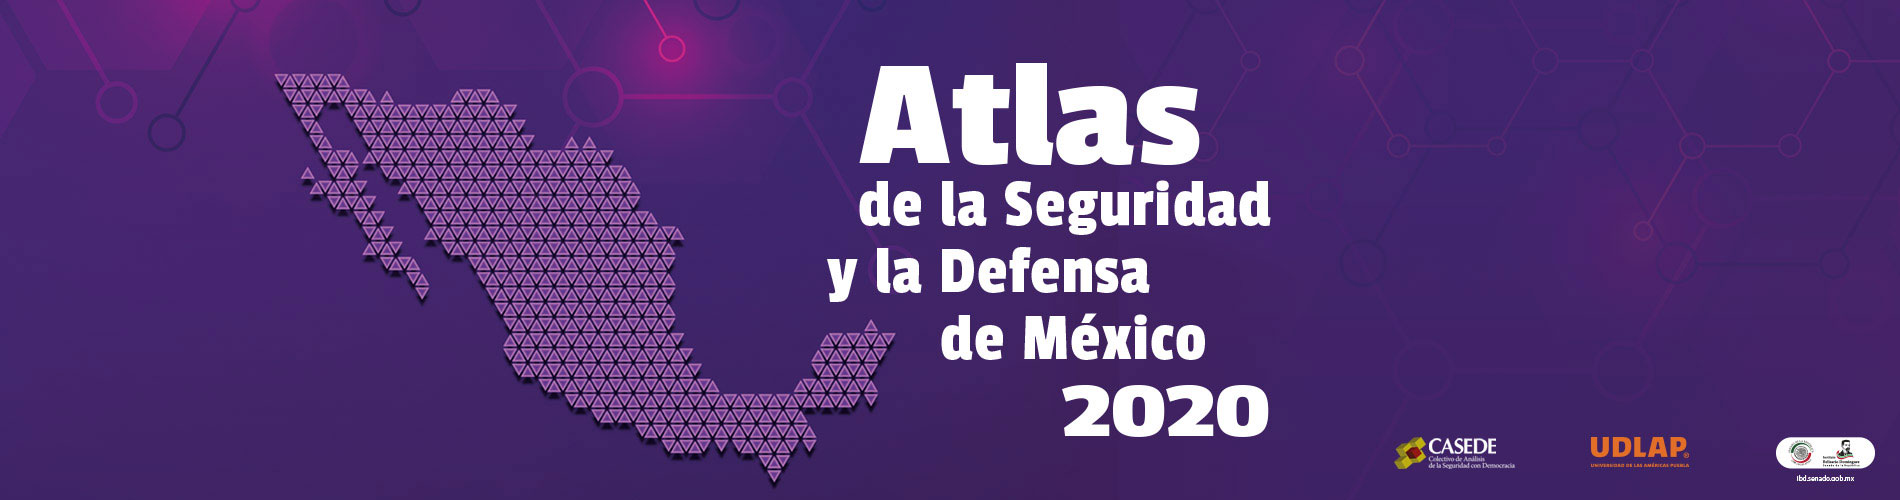 Atlas de la Seguridad y la defensa de México 2020